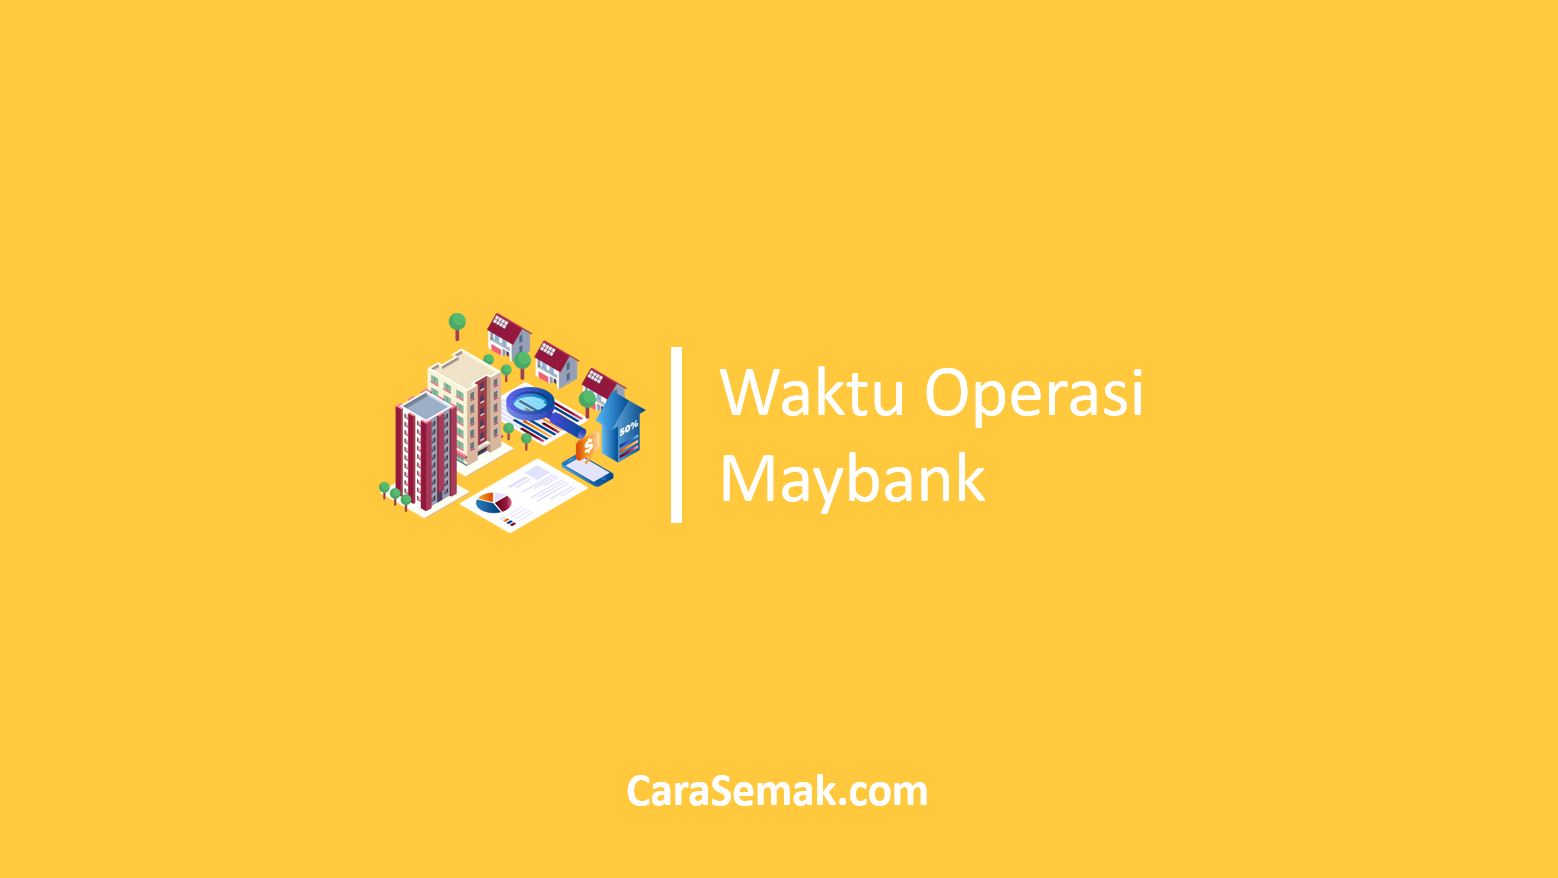 Waktu Operasi Maybank